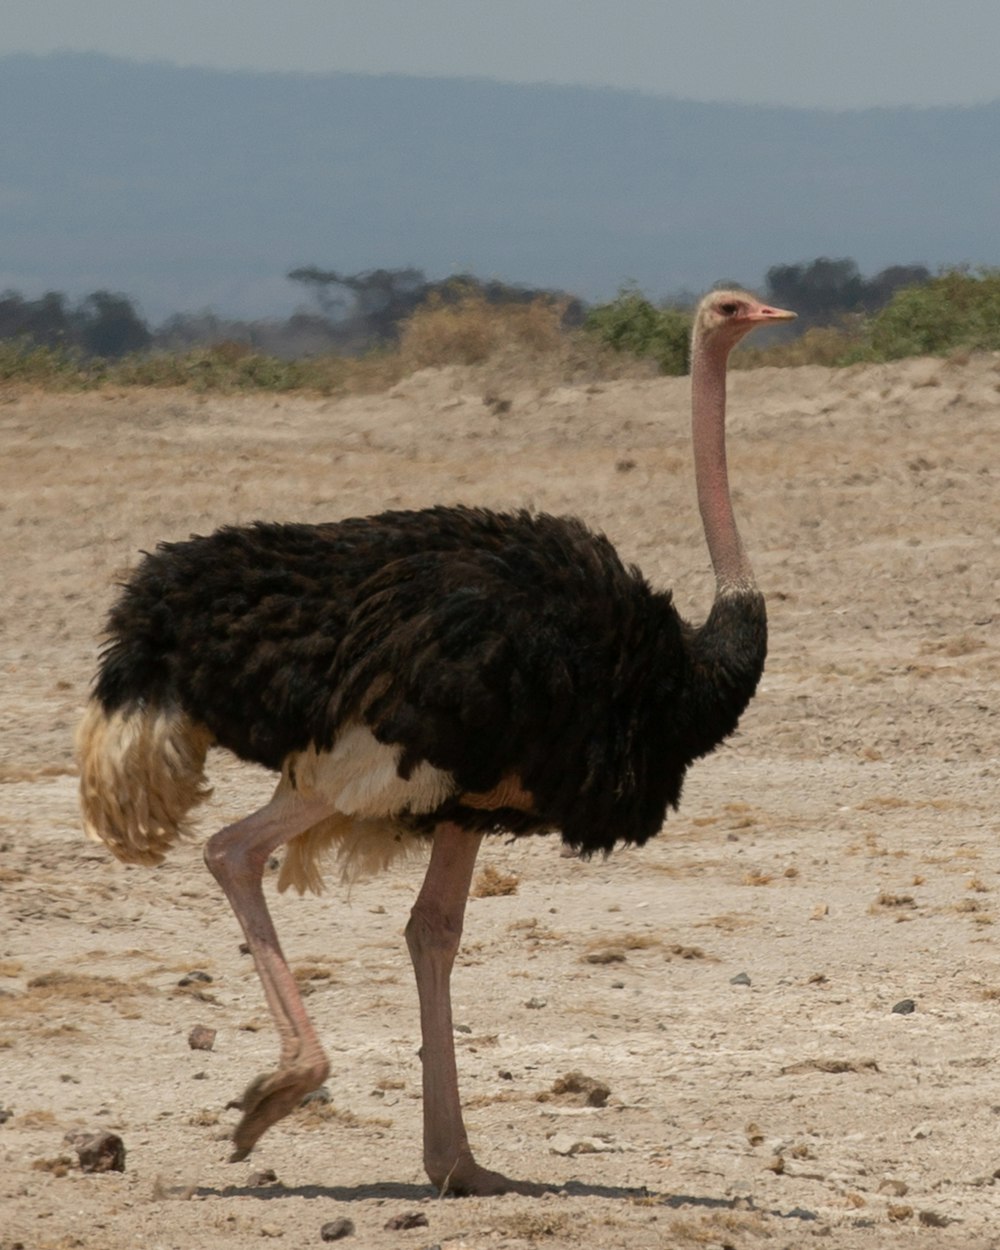 Fotografia da vida selvagem de avestruz preto e marrom